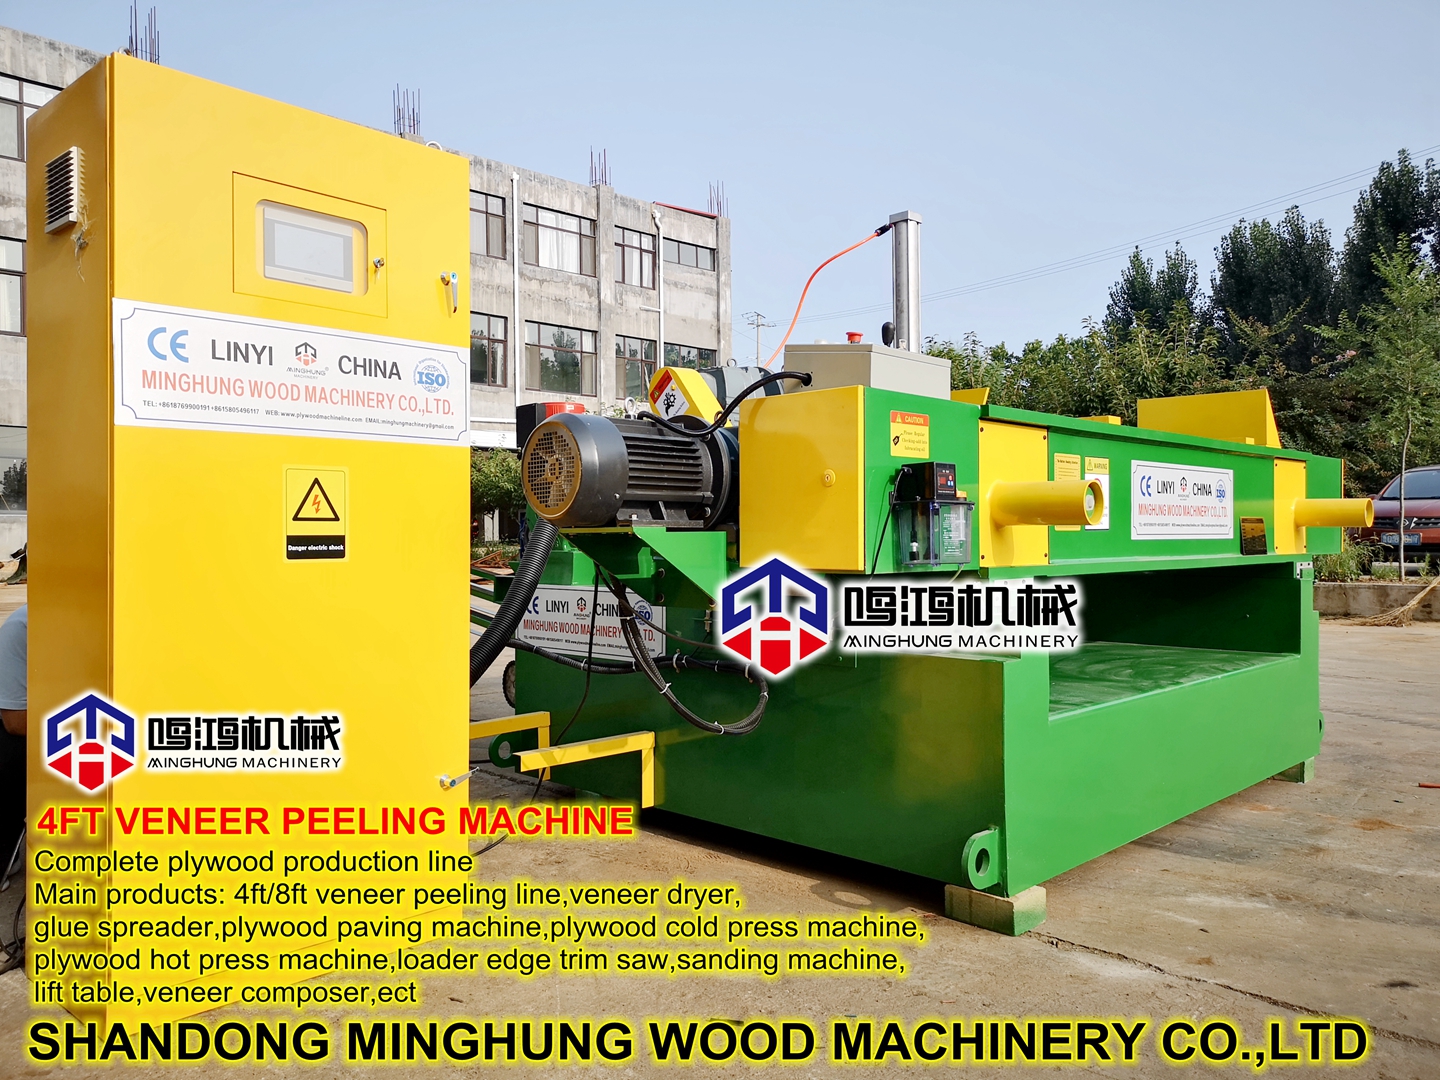 China Linyi Strong Veneer Peeling Lathe Machine on Sawmill